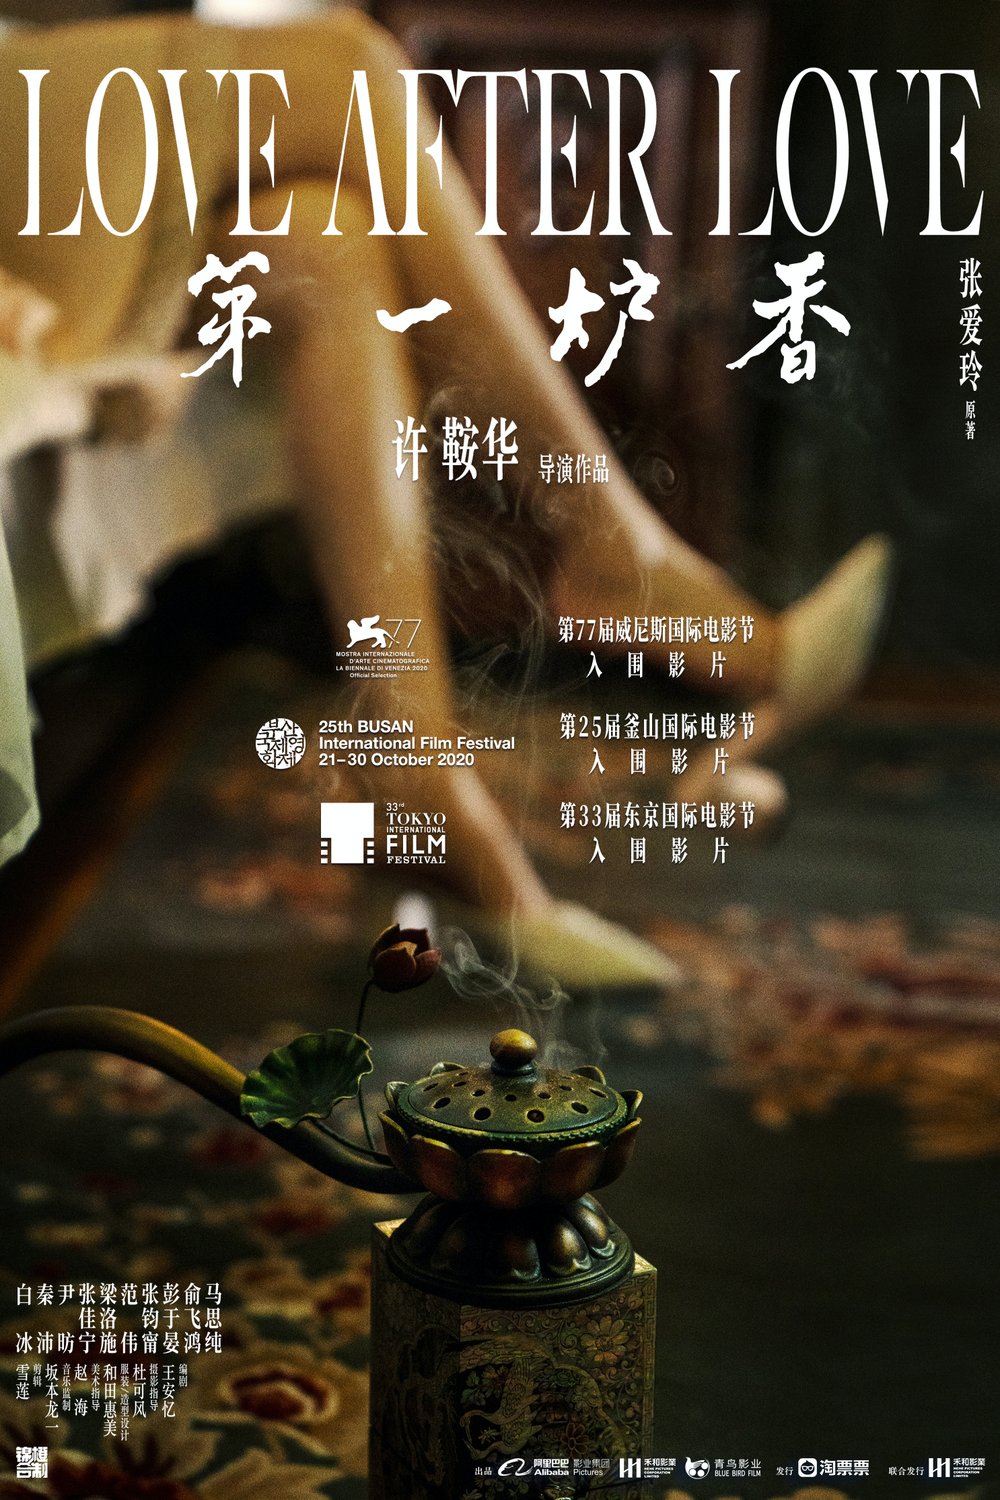 Mandarin poster of the movie Di yi lu xiang